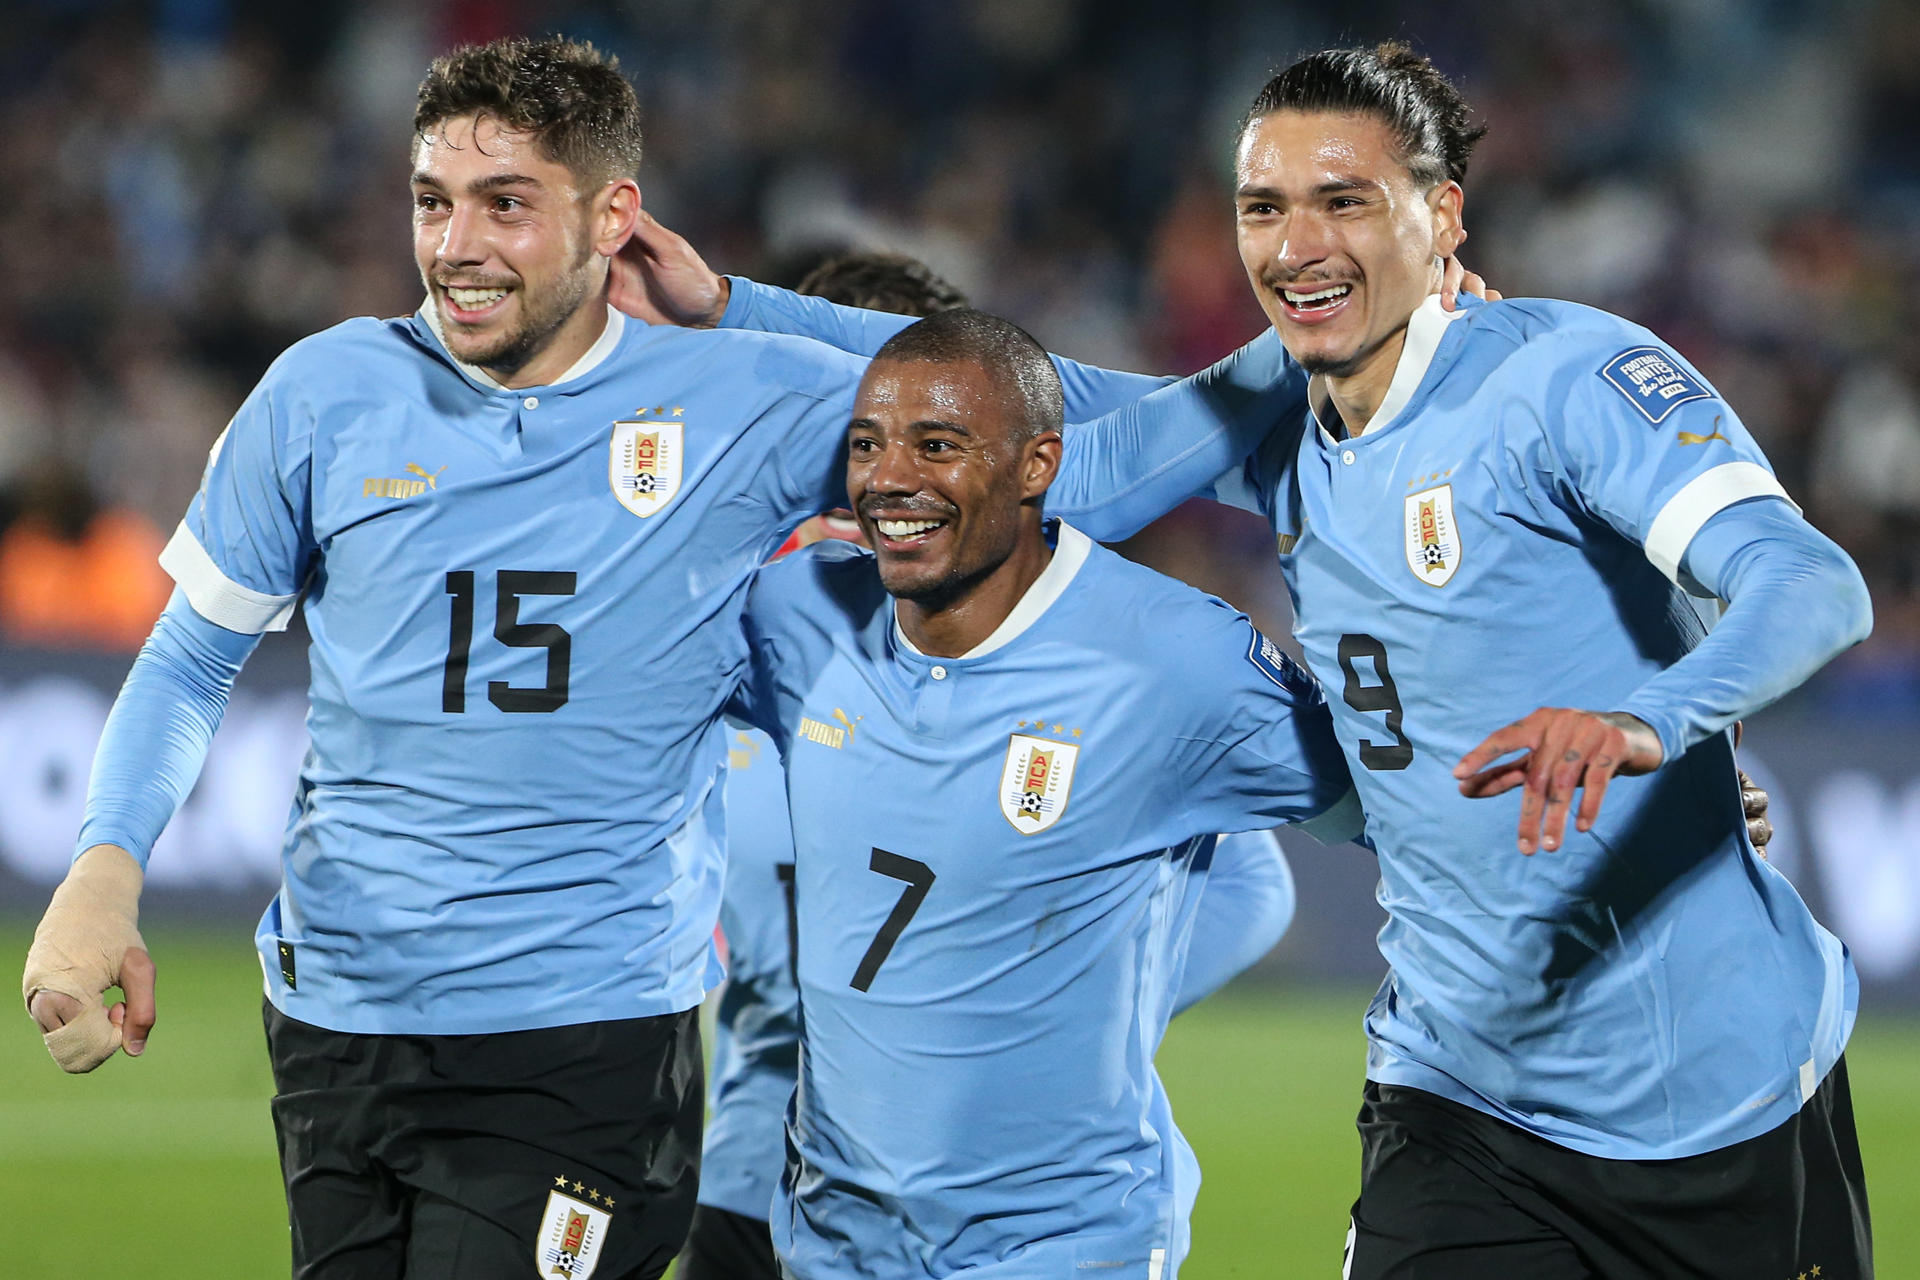 La prensa uruguaya aprueba a una selección con clase y a la que le sobró fútbol